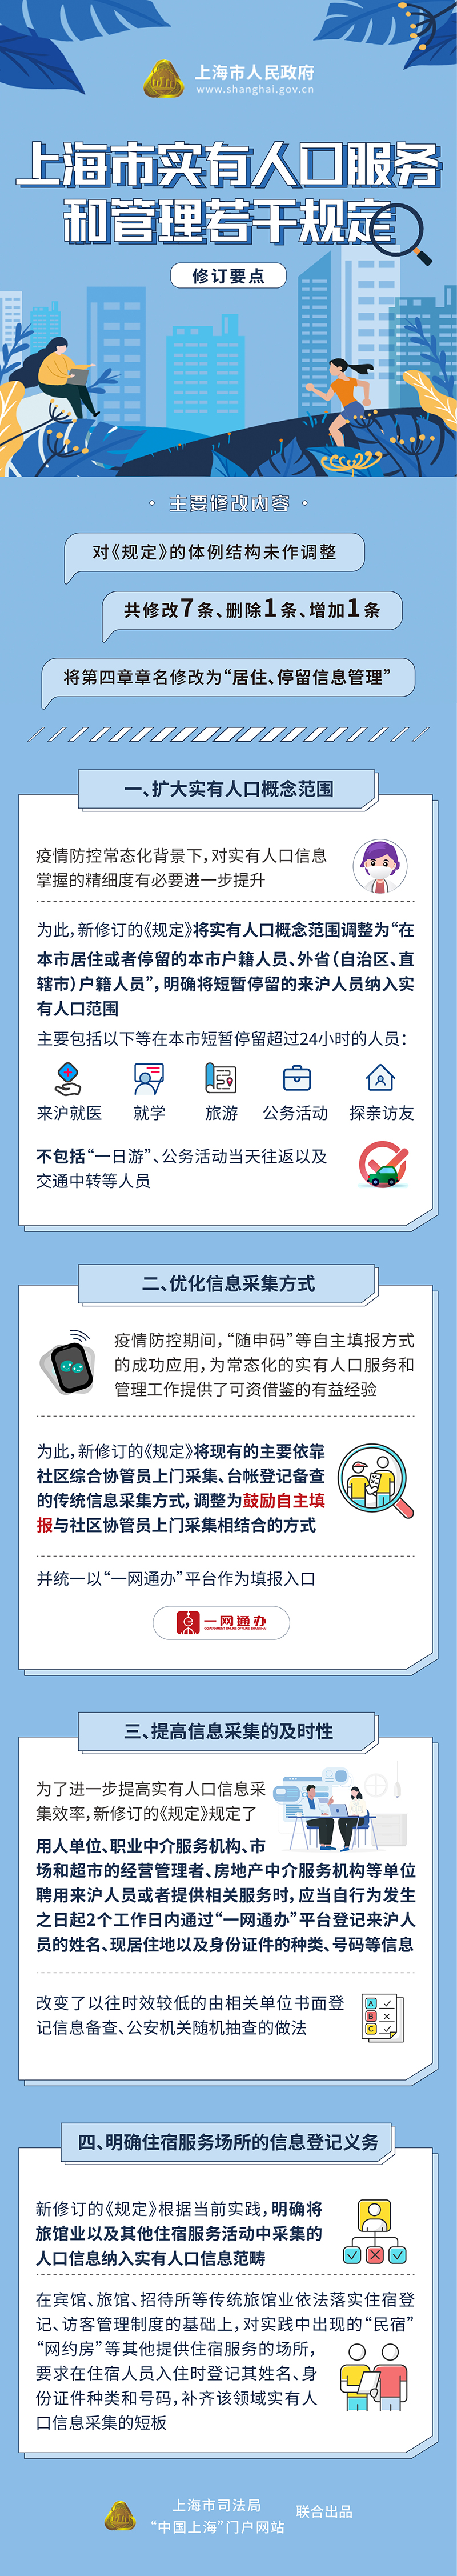 《上海市实有人口服务和管理若干规定》修订要点一览.jpg